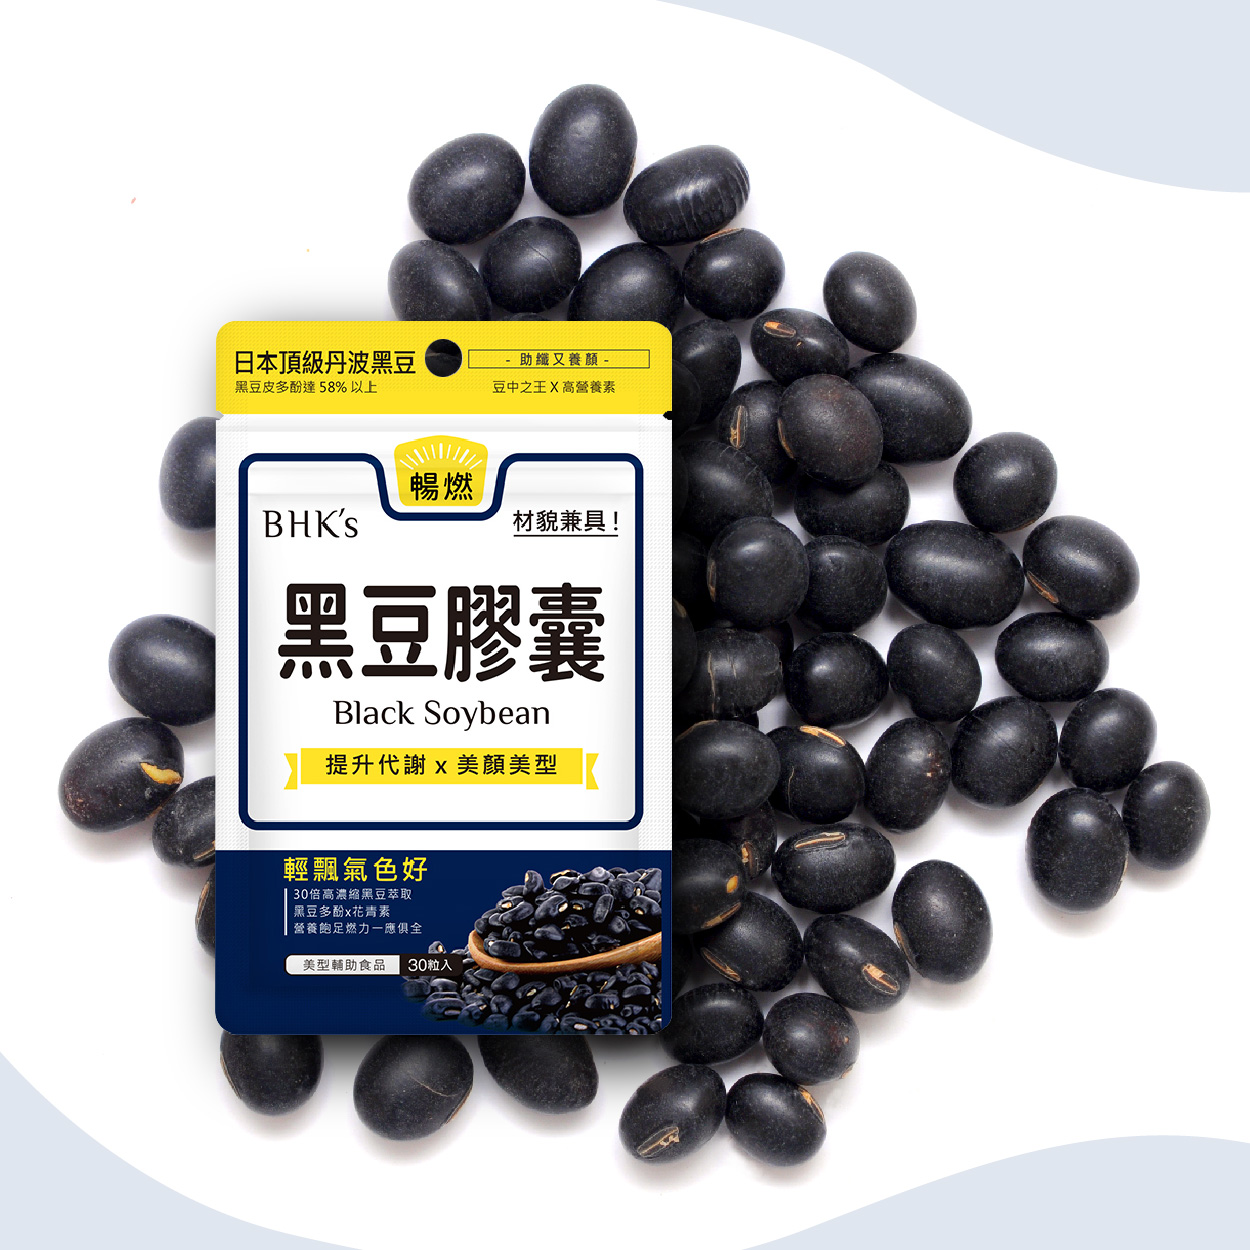 BHK's 黑豆 素食膠囊 提升代謝 健康養生 輕鬆擁有好氣色